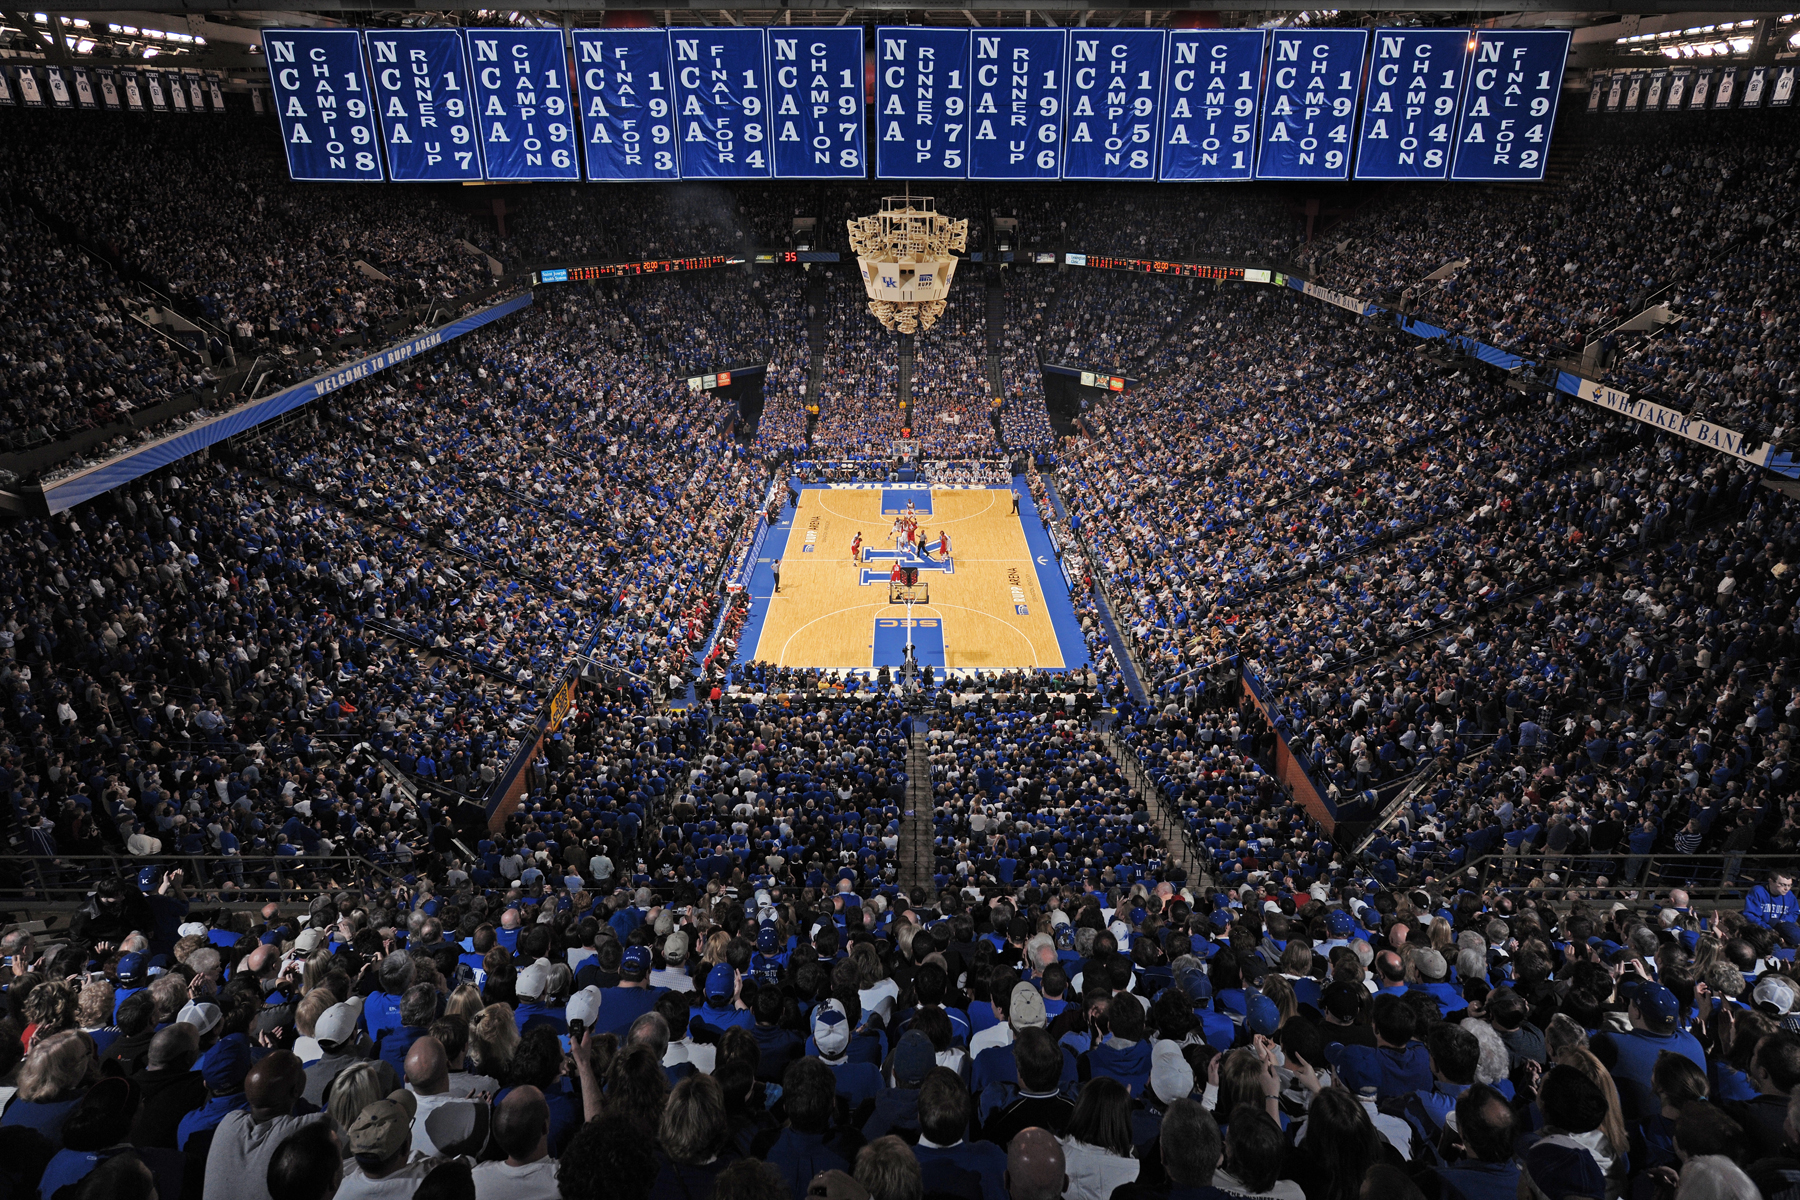 baloncesto live wallpaper,multitud,ventilador,audiencia,estadio,casa de campo